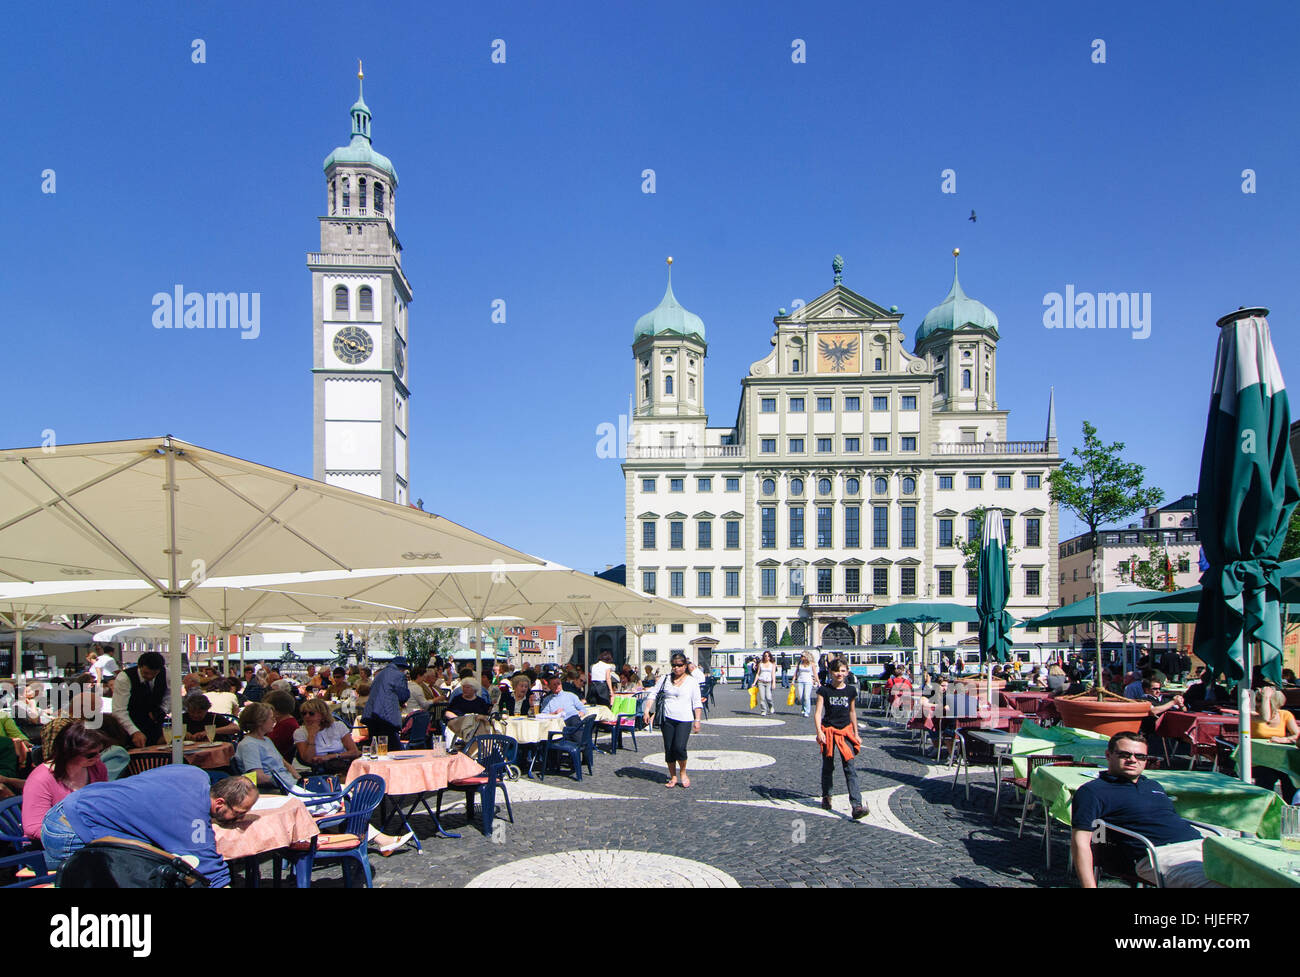 Augsburg: Perlach Turm, Rathaus am quadratischen Rathausplatz, Schwaben, Swabia, Bayern, Bayern, Deutschland Stockfoto